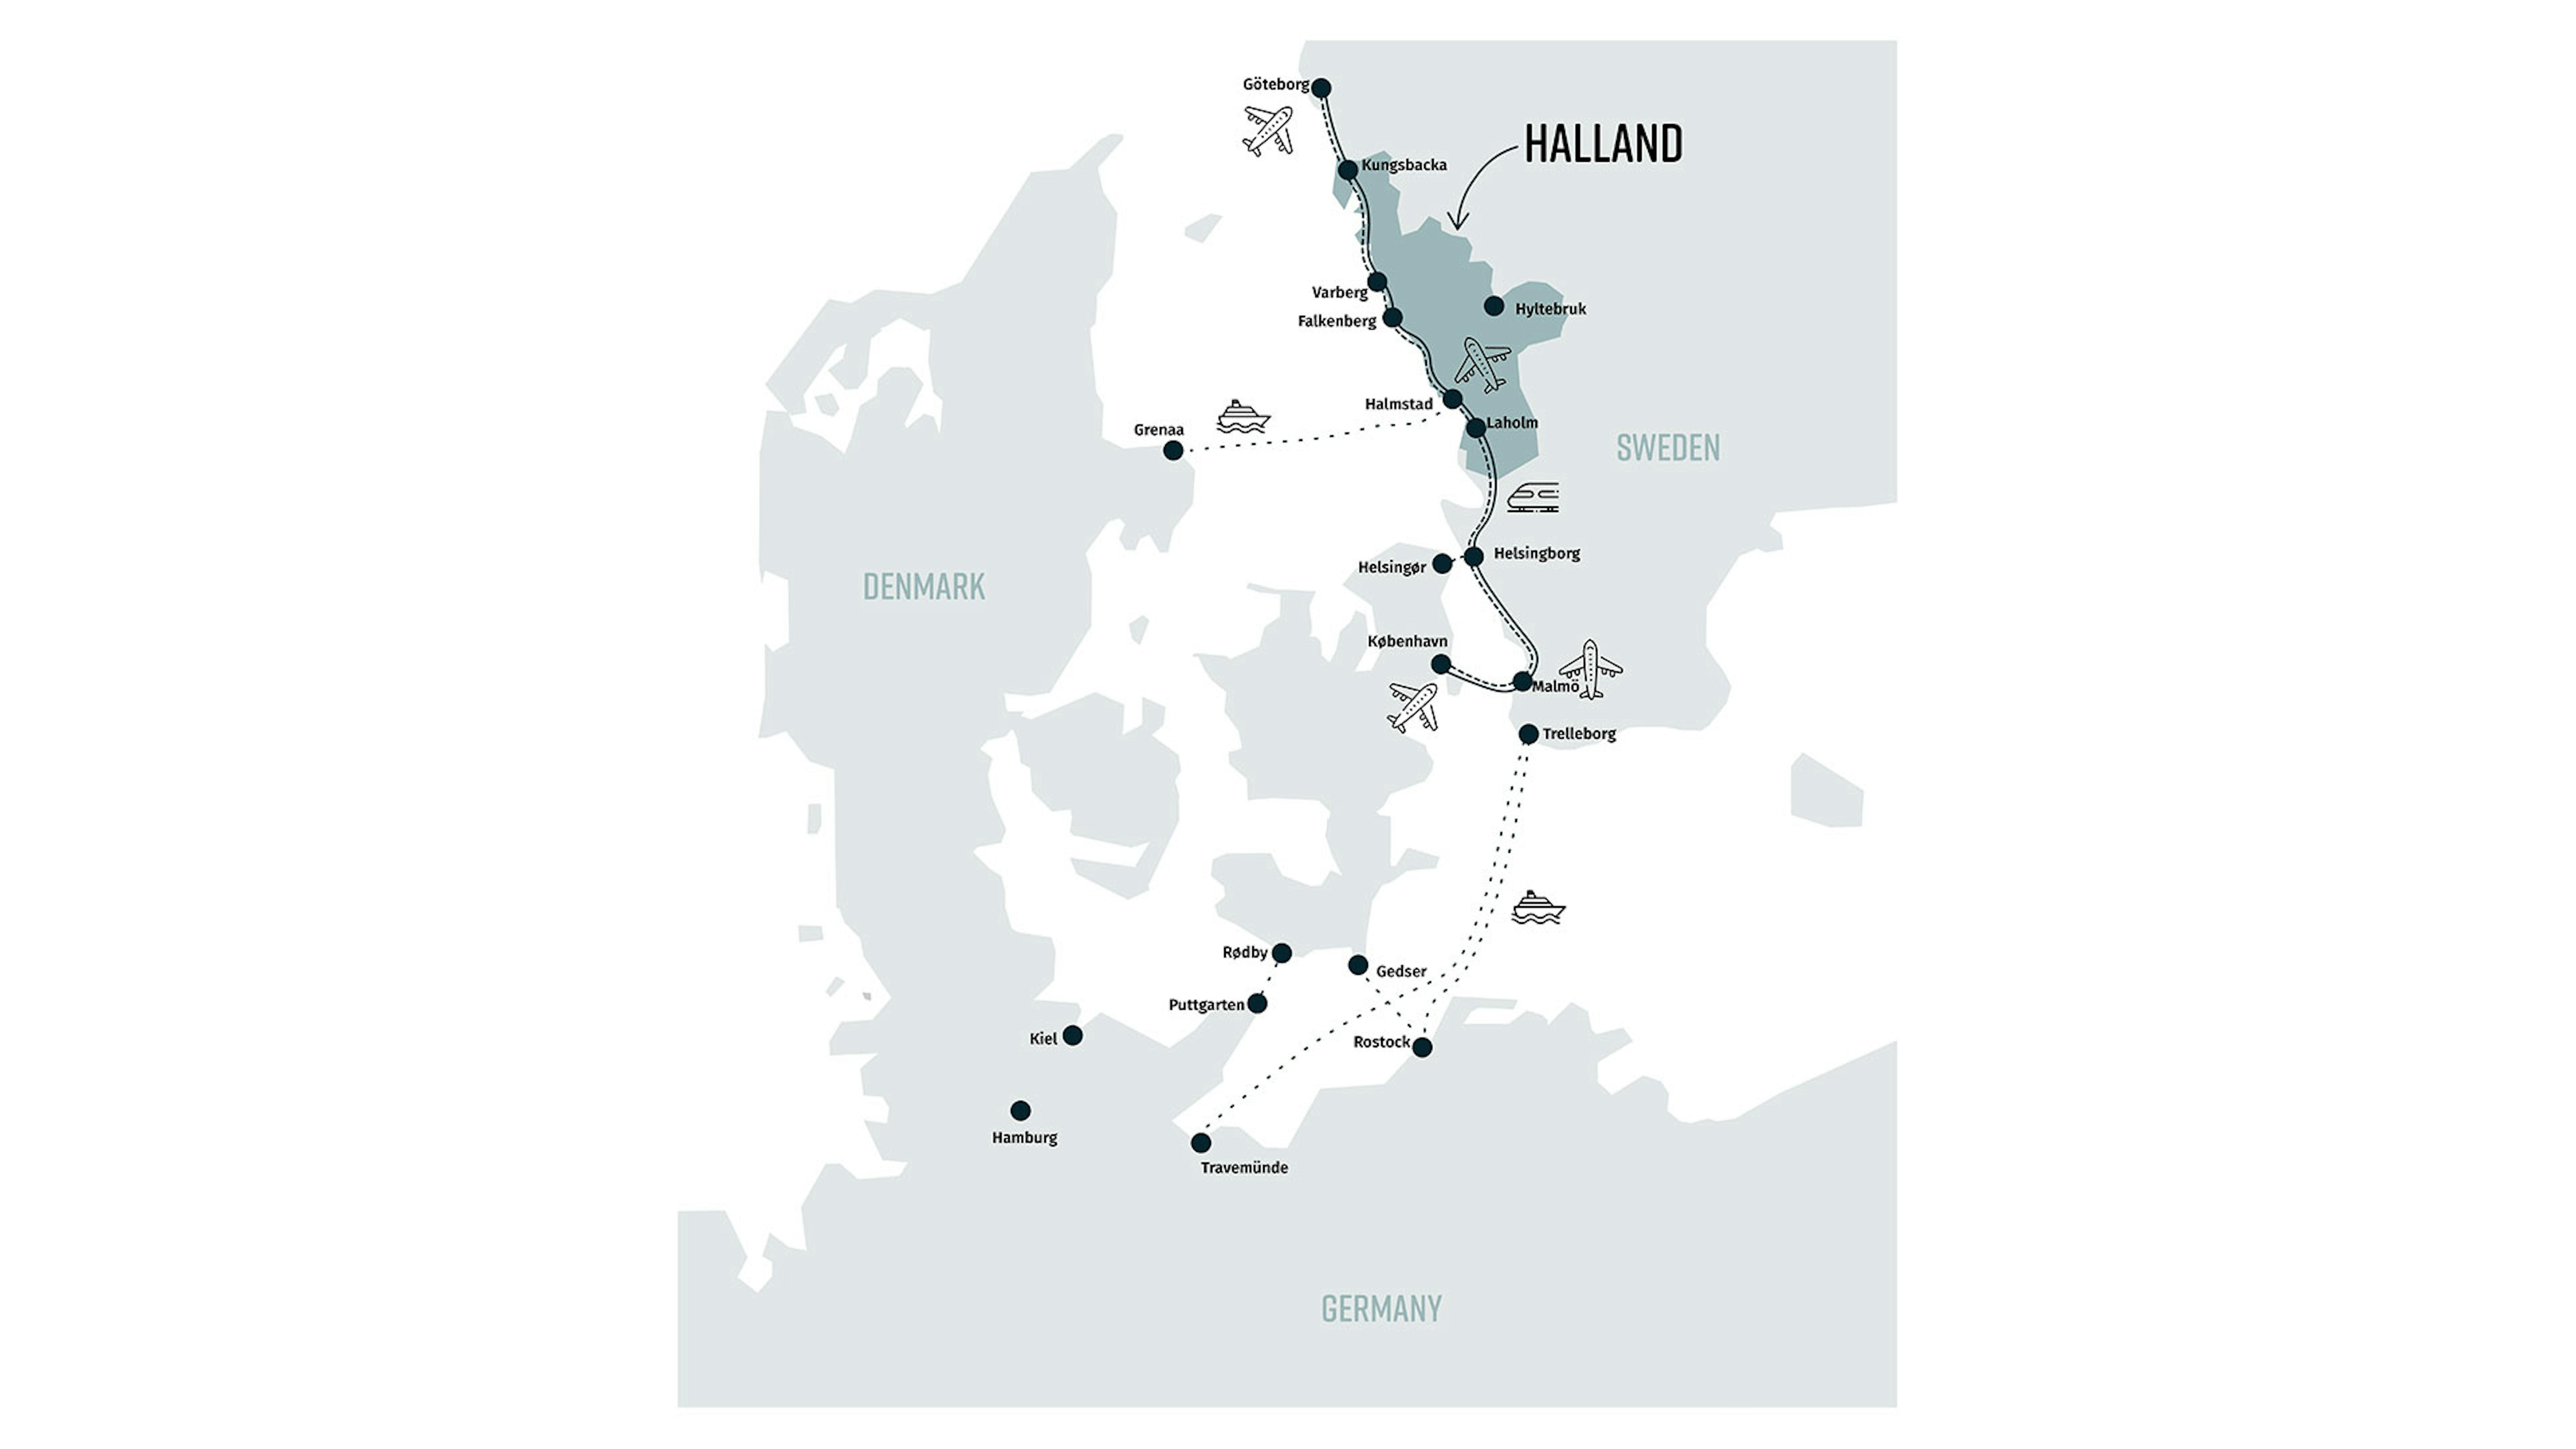 Karte von Dänemark, Norddeutschland und Südschweden mit Routen nach Halland.